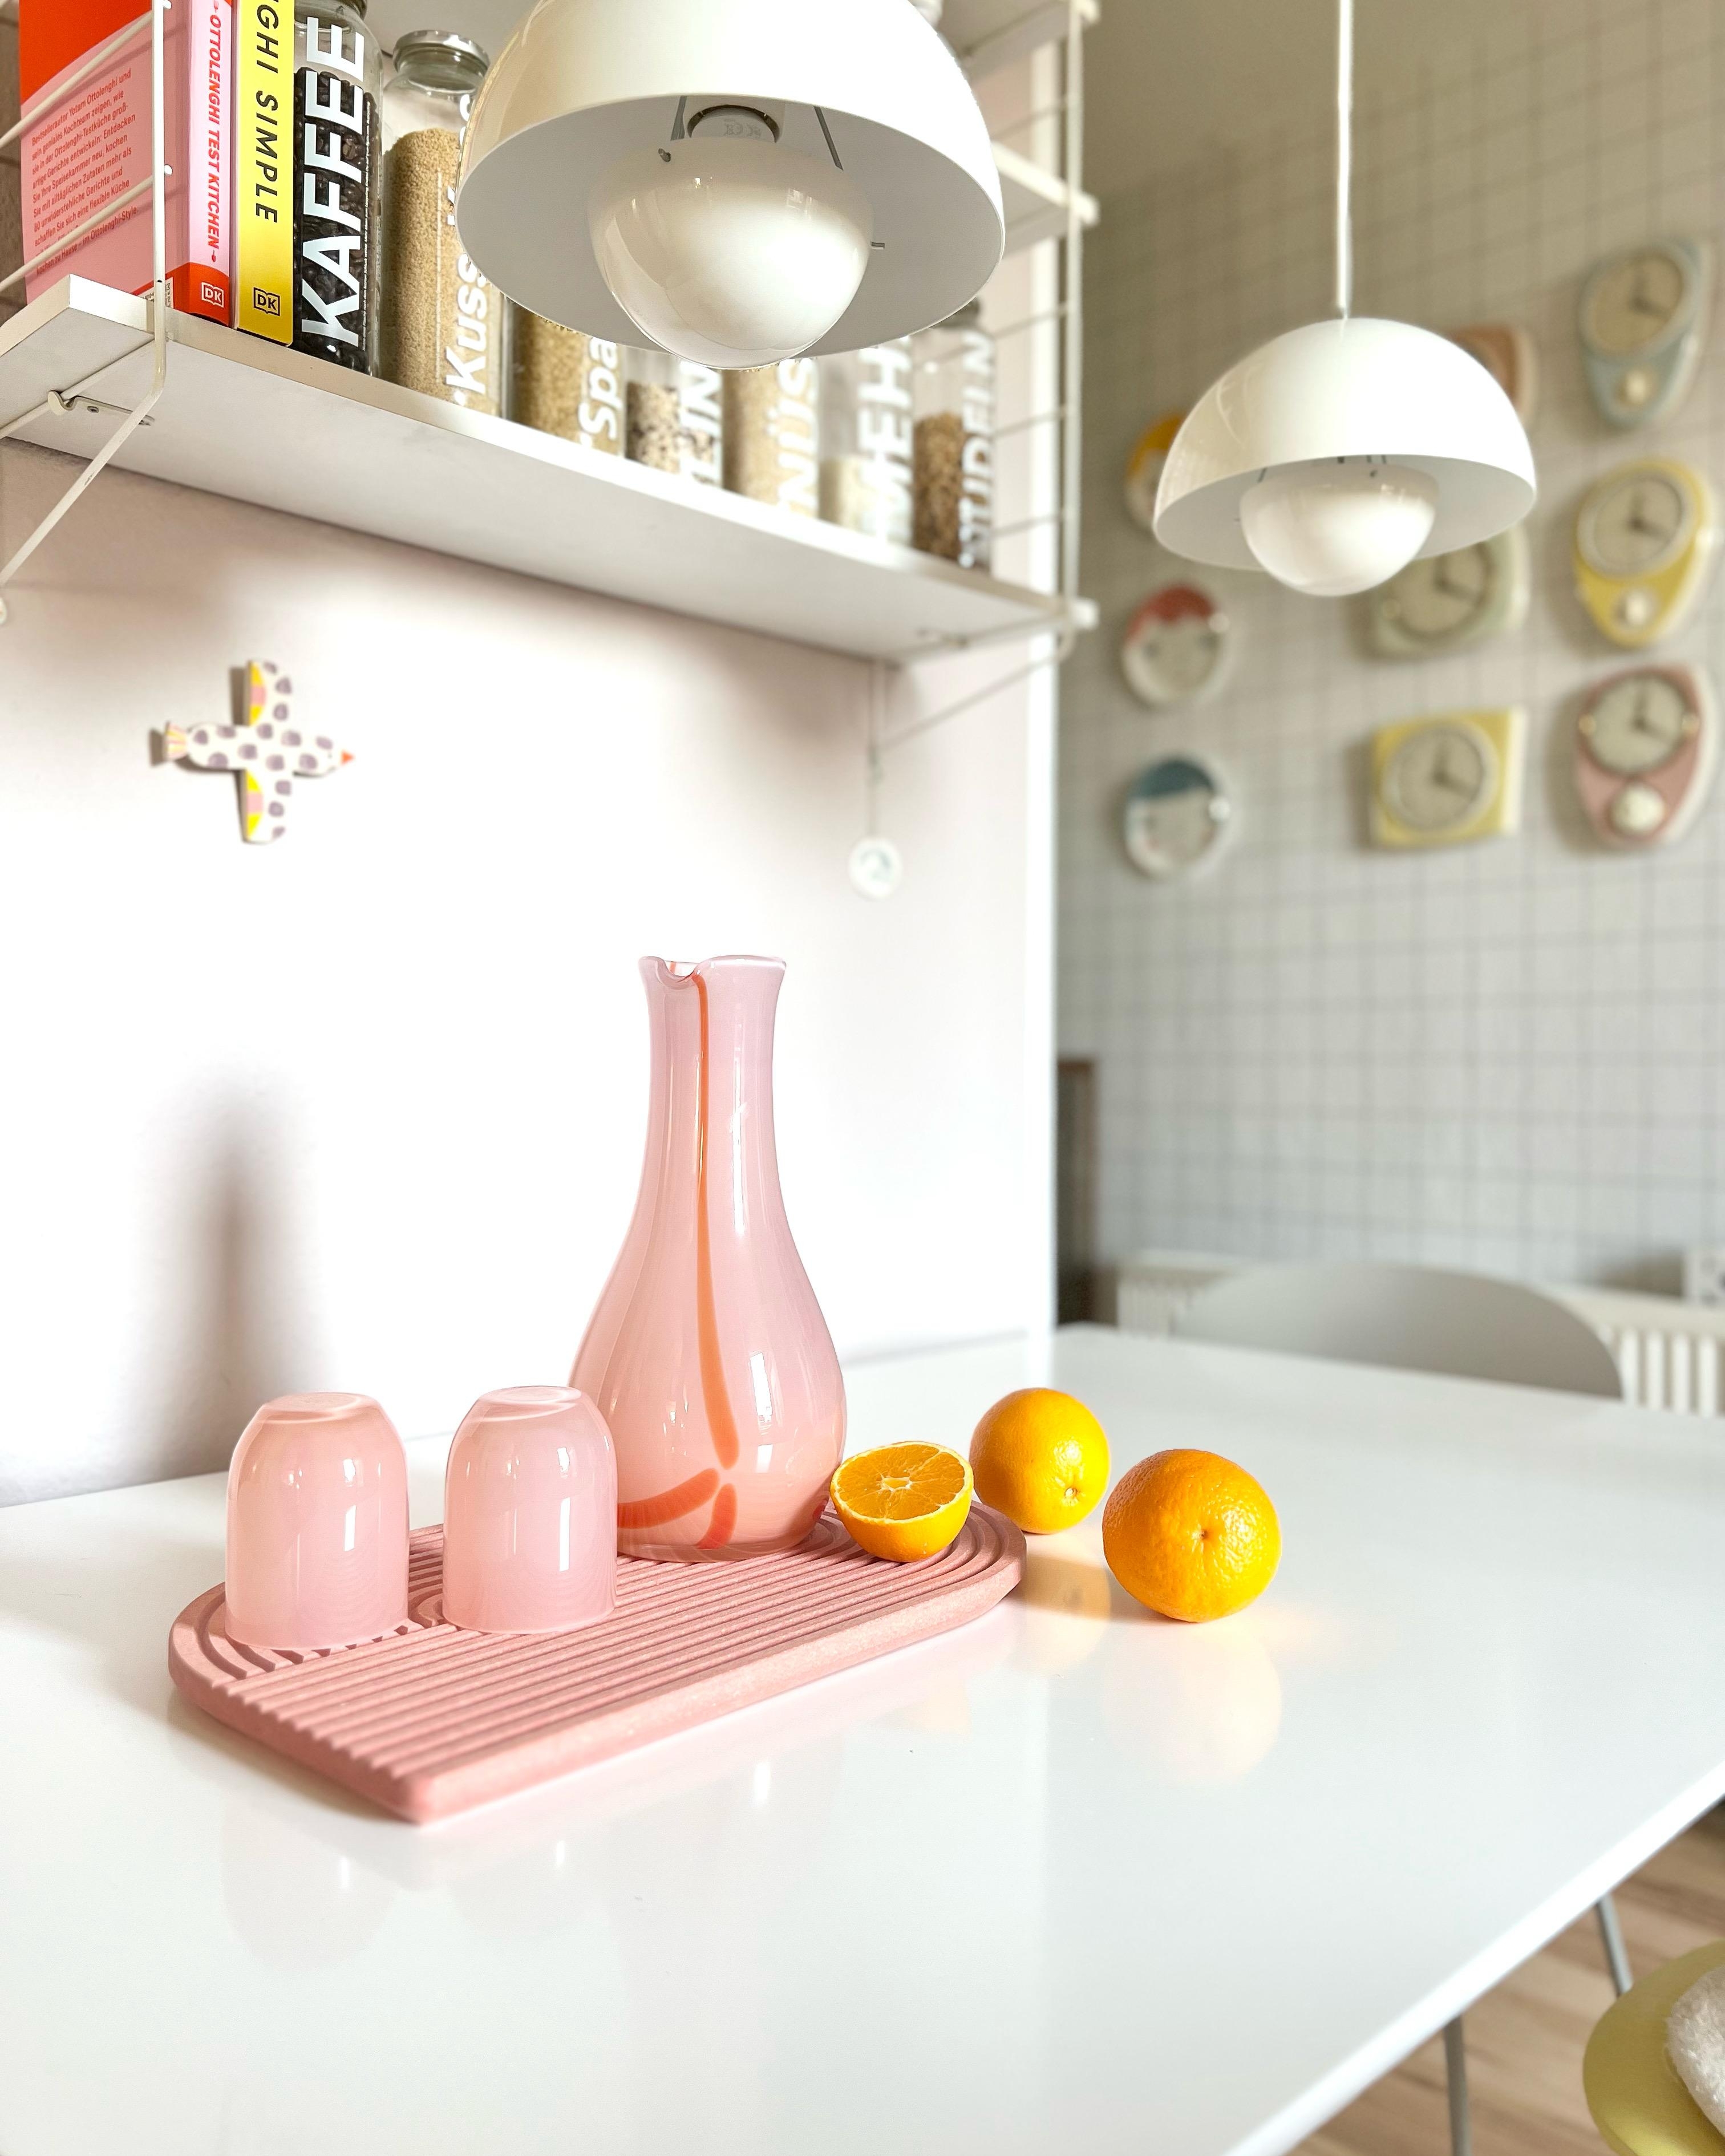 #interior #interiordesign #interiorinspo #couchliebt #kitcheninspo #colourfulkitchen #pastell #küche #bunt #orangen #wye